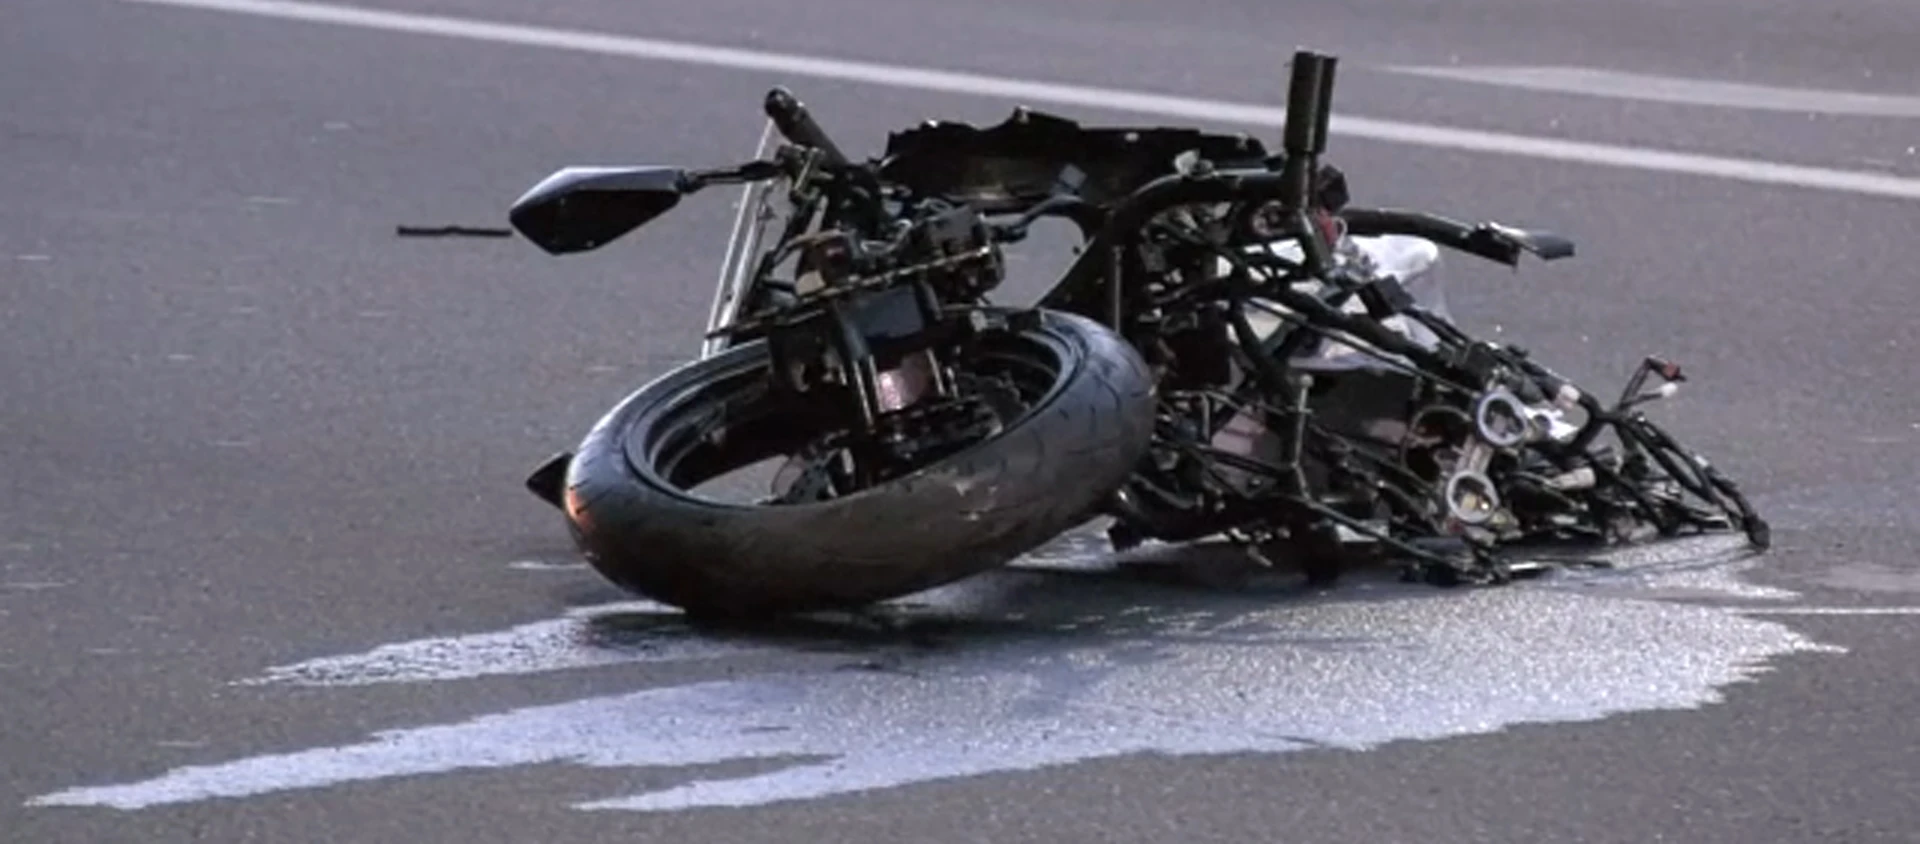 Wrak motocykla po wypadku